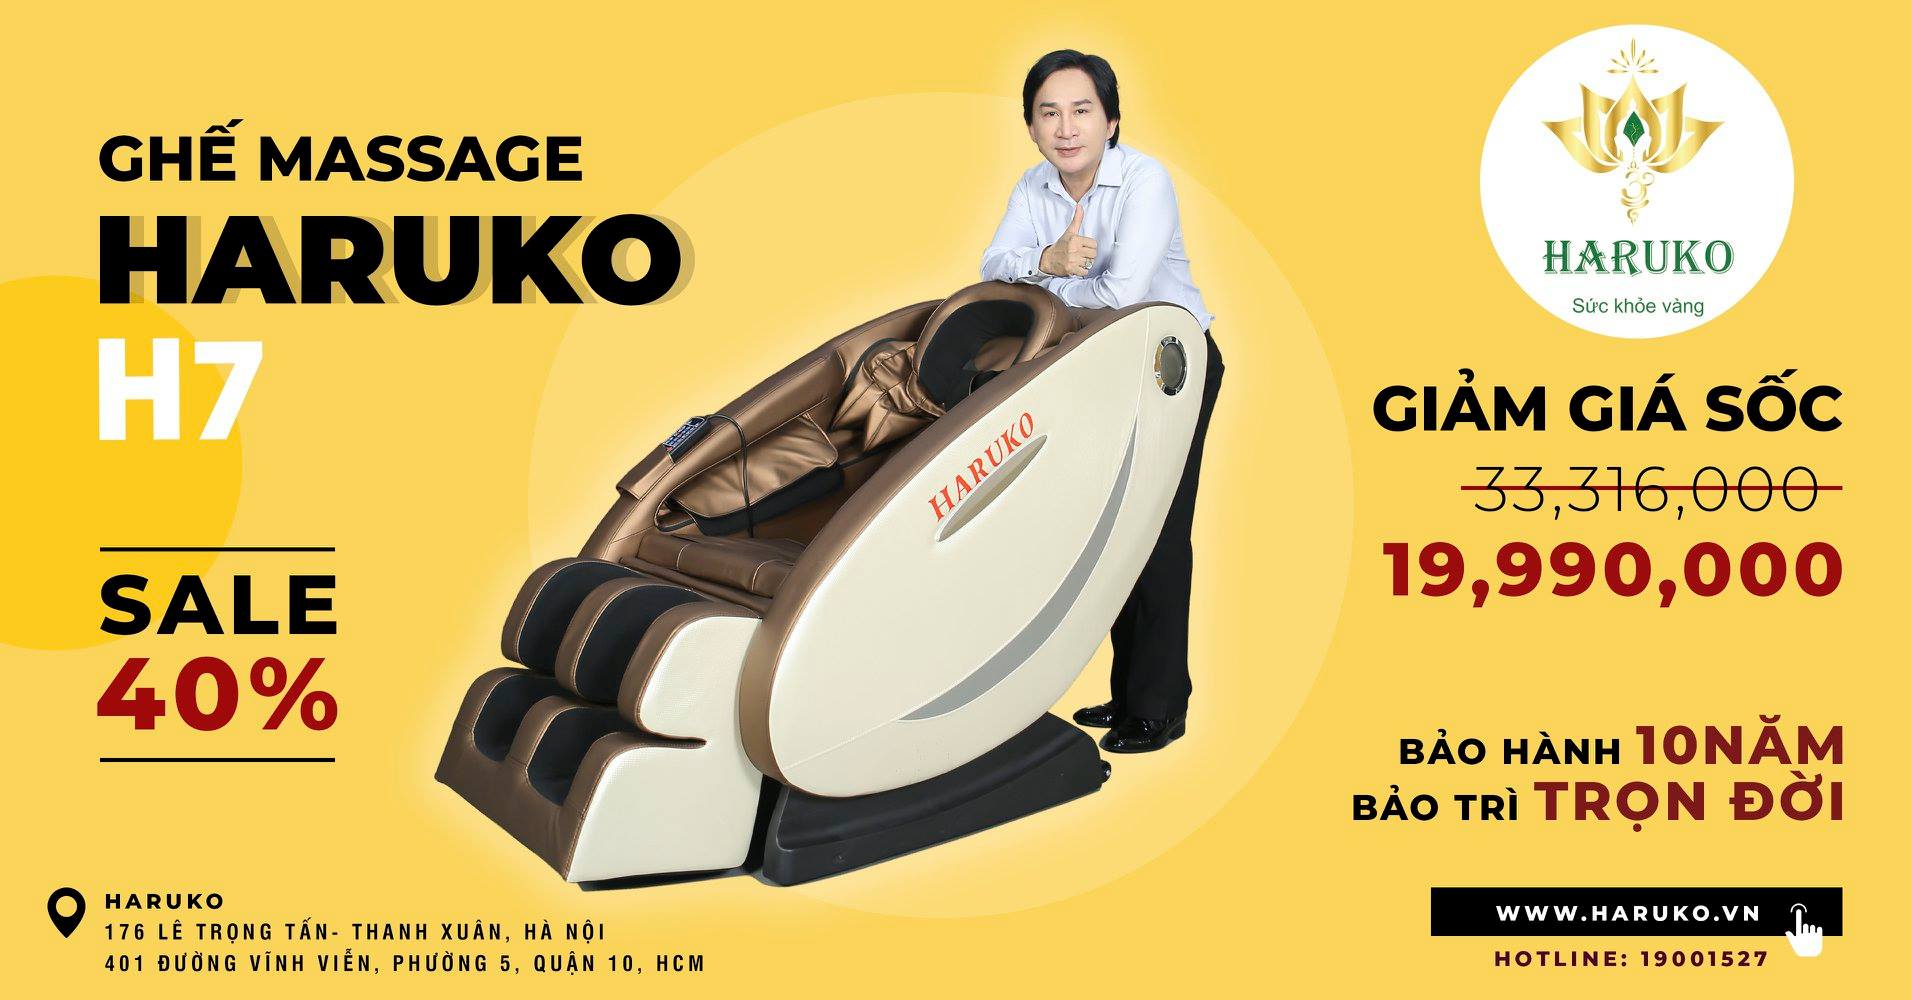 Ghế massage Haruko H7 là một trong những sản phẩm bán chạy nhất trên thị trường vào thời điểm hiện nay